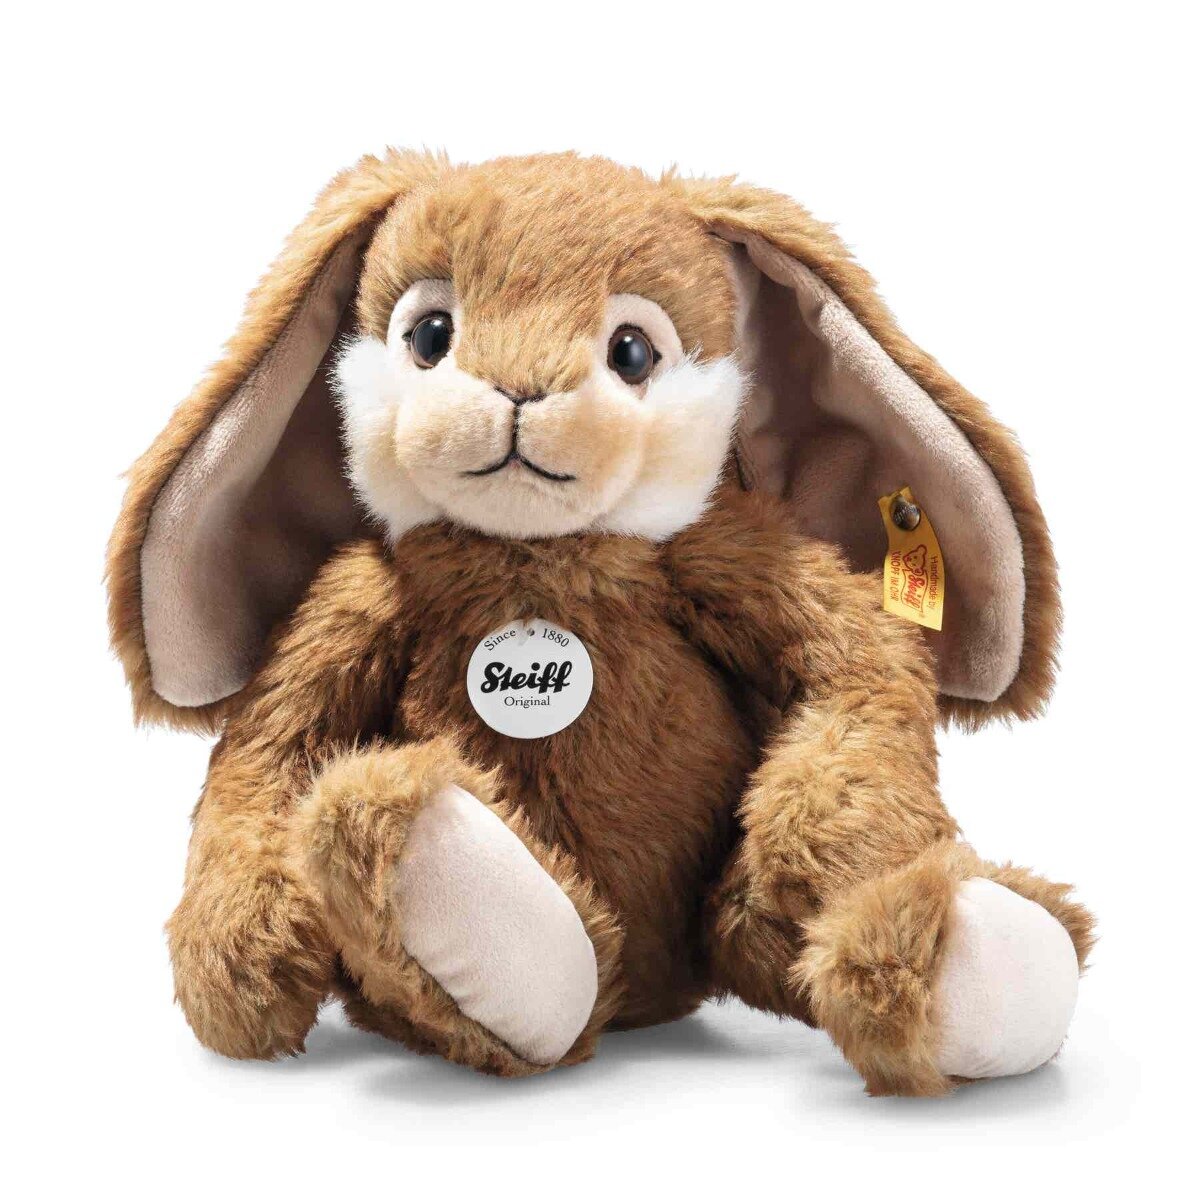 Мягкая игрушка Steiff Bommel dangling rabbit (Штайф кролик Боммель 28 см)